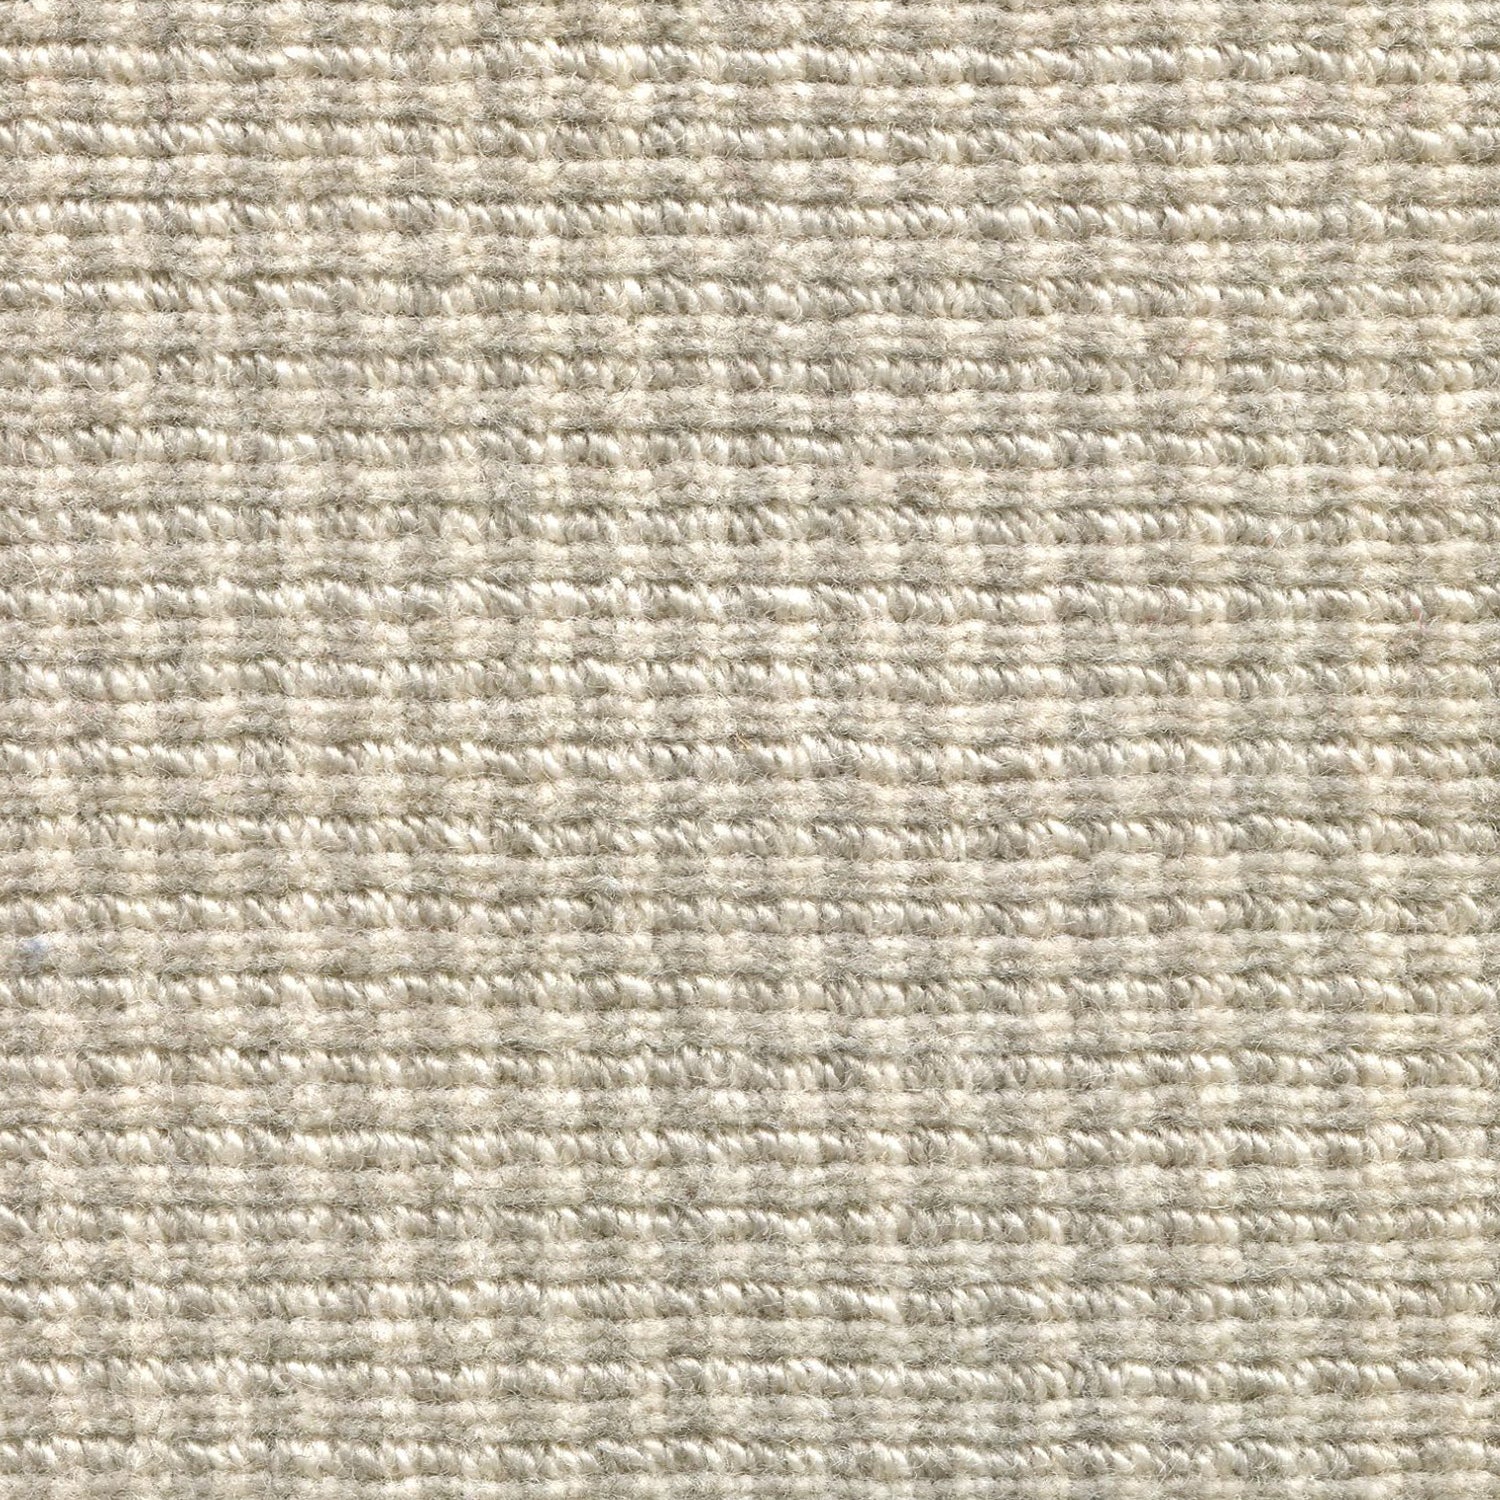 Wool broadloom carpet swatch in a high-pile striped weave in oatmeal